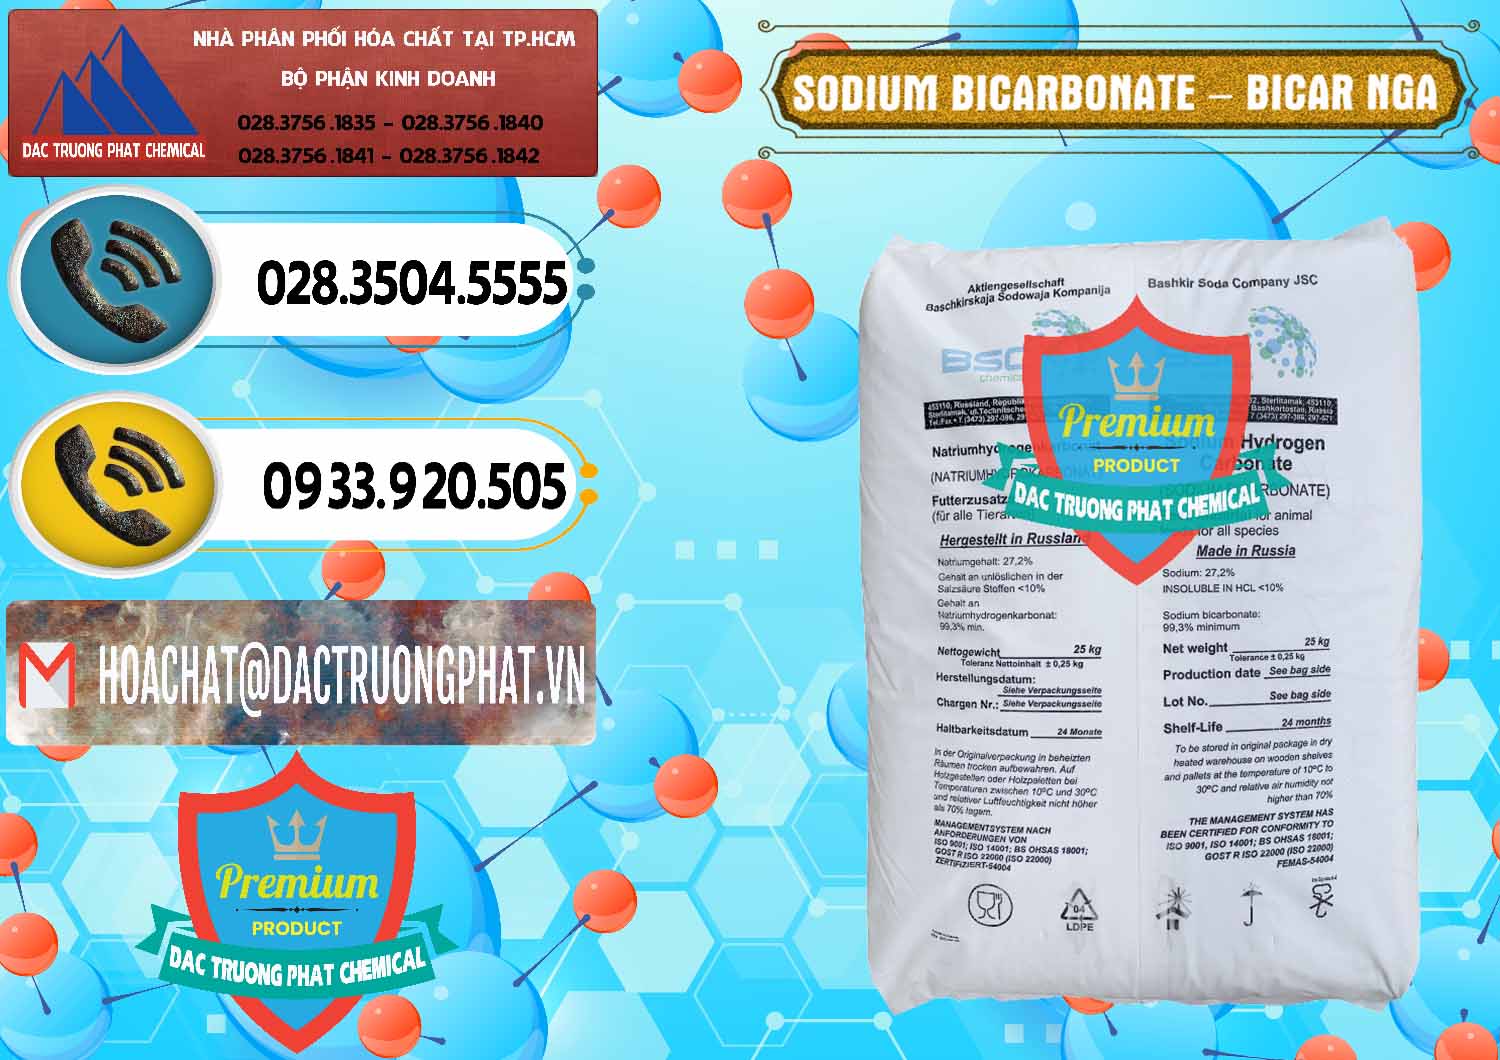 Nơi bán ( cung ứng ) Sodium Bicarbonate – Bicar NaHCO3 Nga Russia - 0425 - Chuyên cung ứng ( phân phối ) hóa chất tại TP.HCM - hoachatdetnhuom.vn